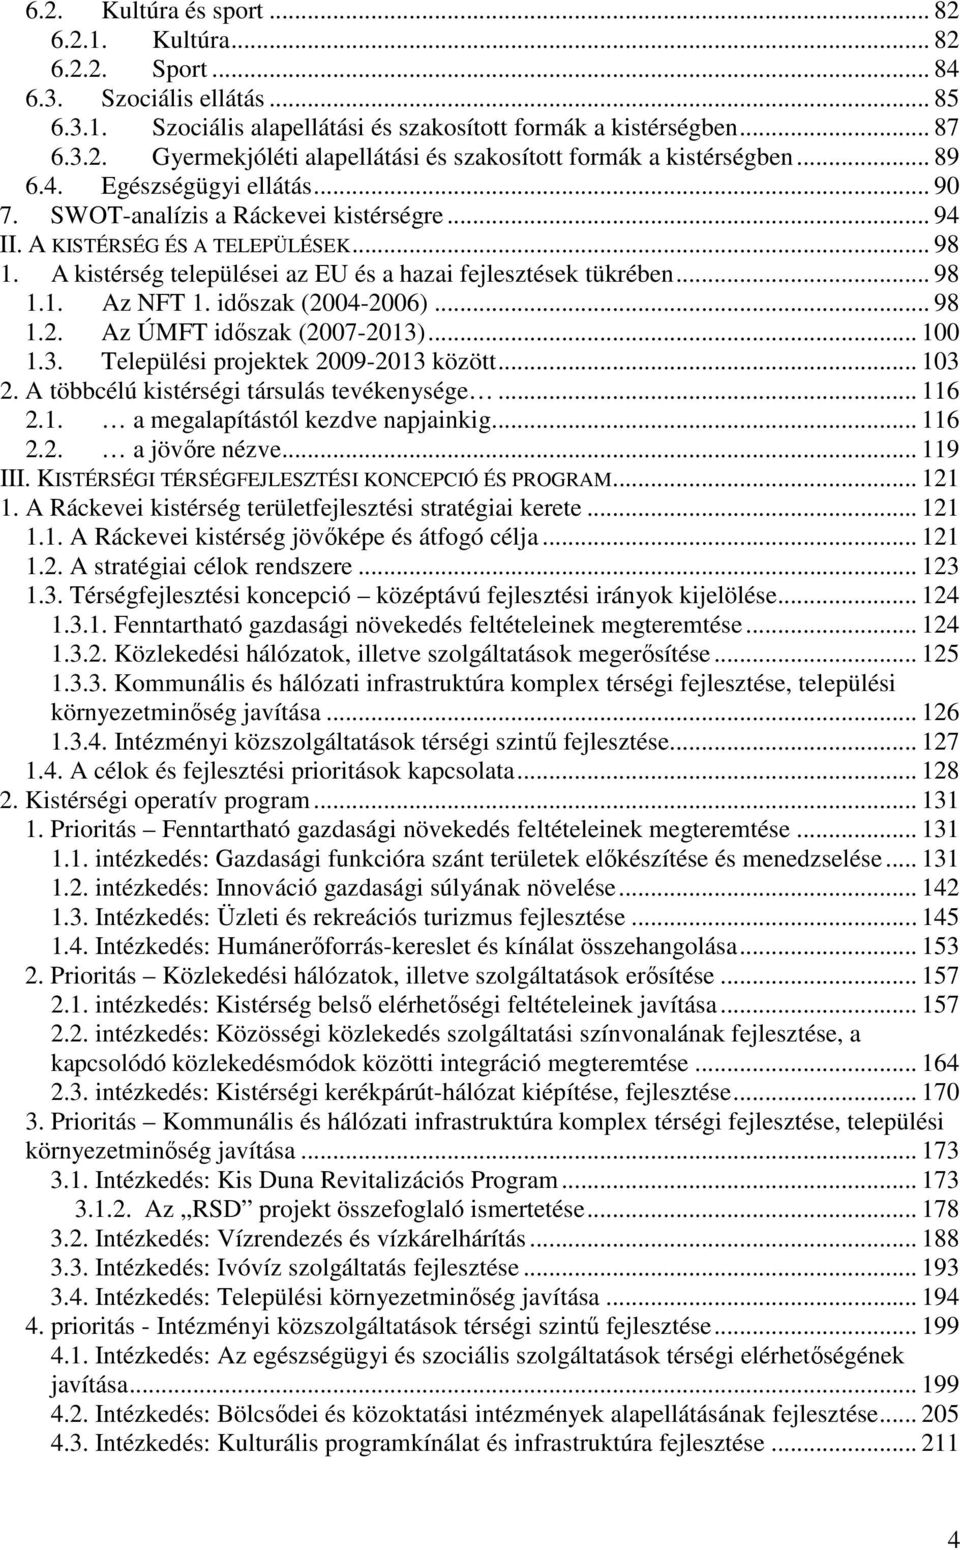 idıszak (2004-2006)... 98 1.2. Az ÚMFT idıszak (2007-2013)... 100 1.3. Települési projektek 2009-2013 között... 103 2. A többcélú kistérségi társulás tevékenysége... 116 2.1. a megalapítástól kezdve napjainkig.